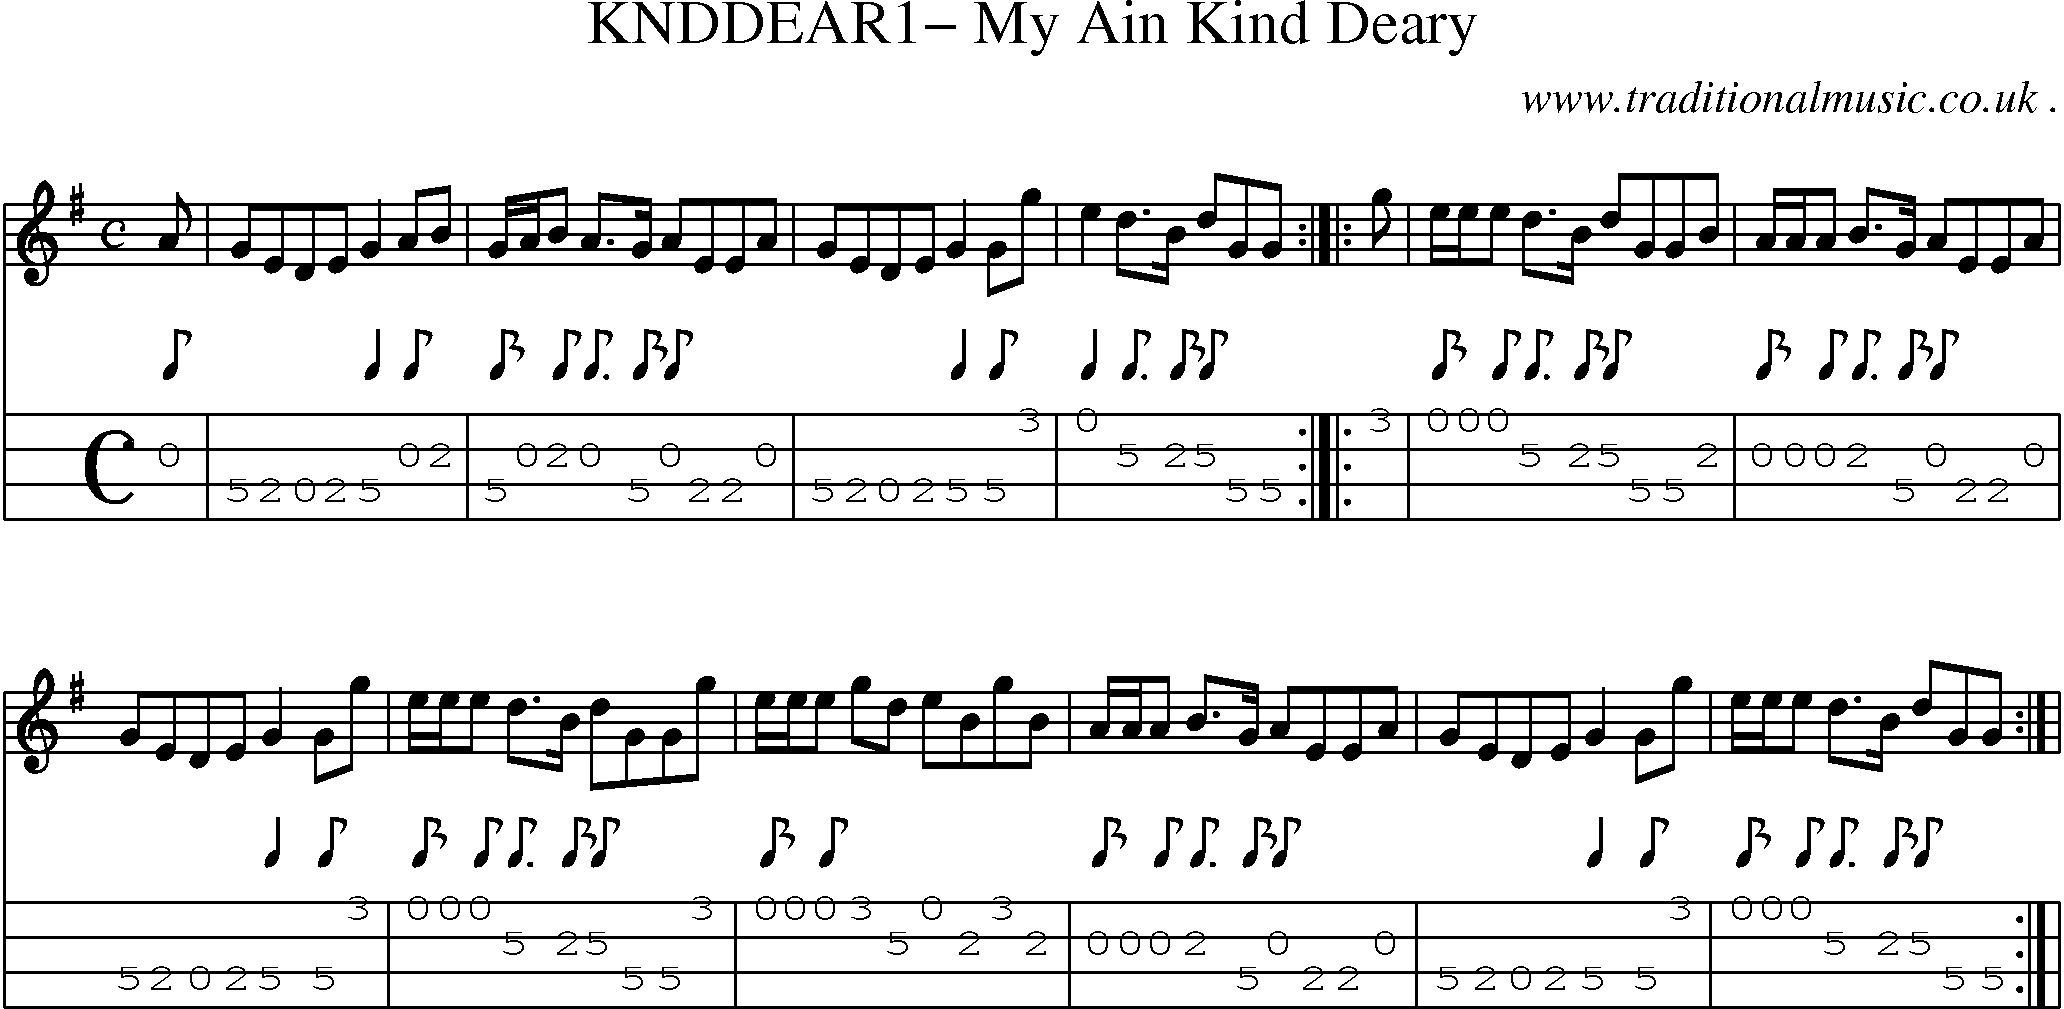 Sheet-Music and Mandolin Tabs for Knddear1 My Ain Kind Deary